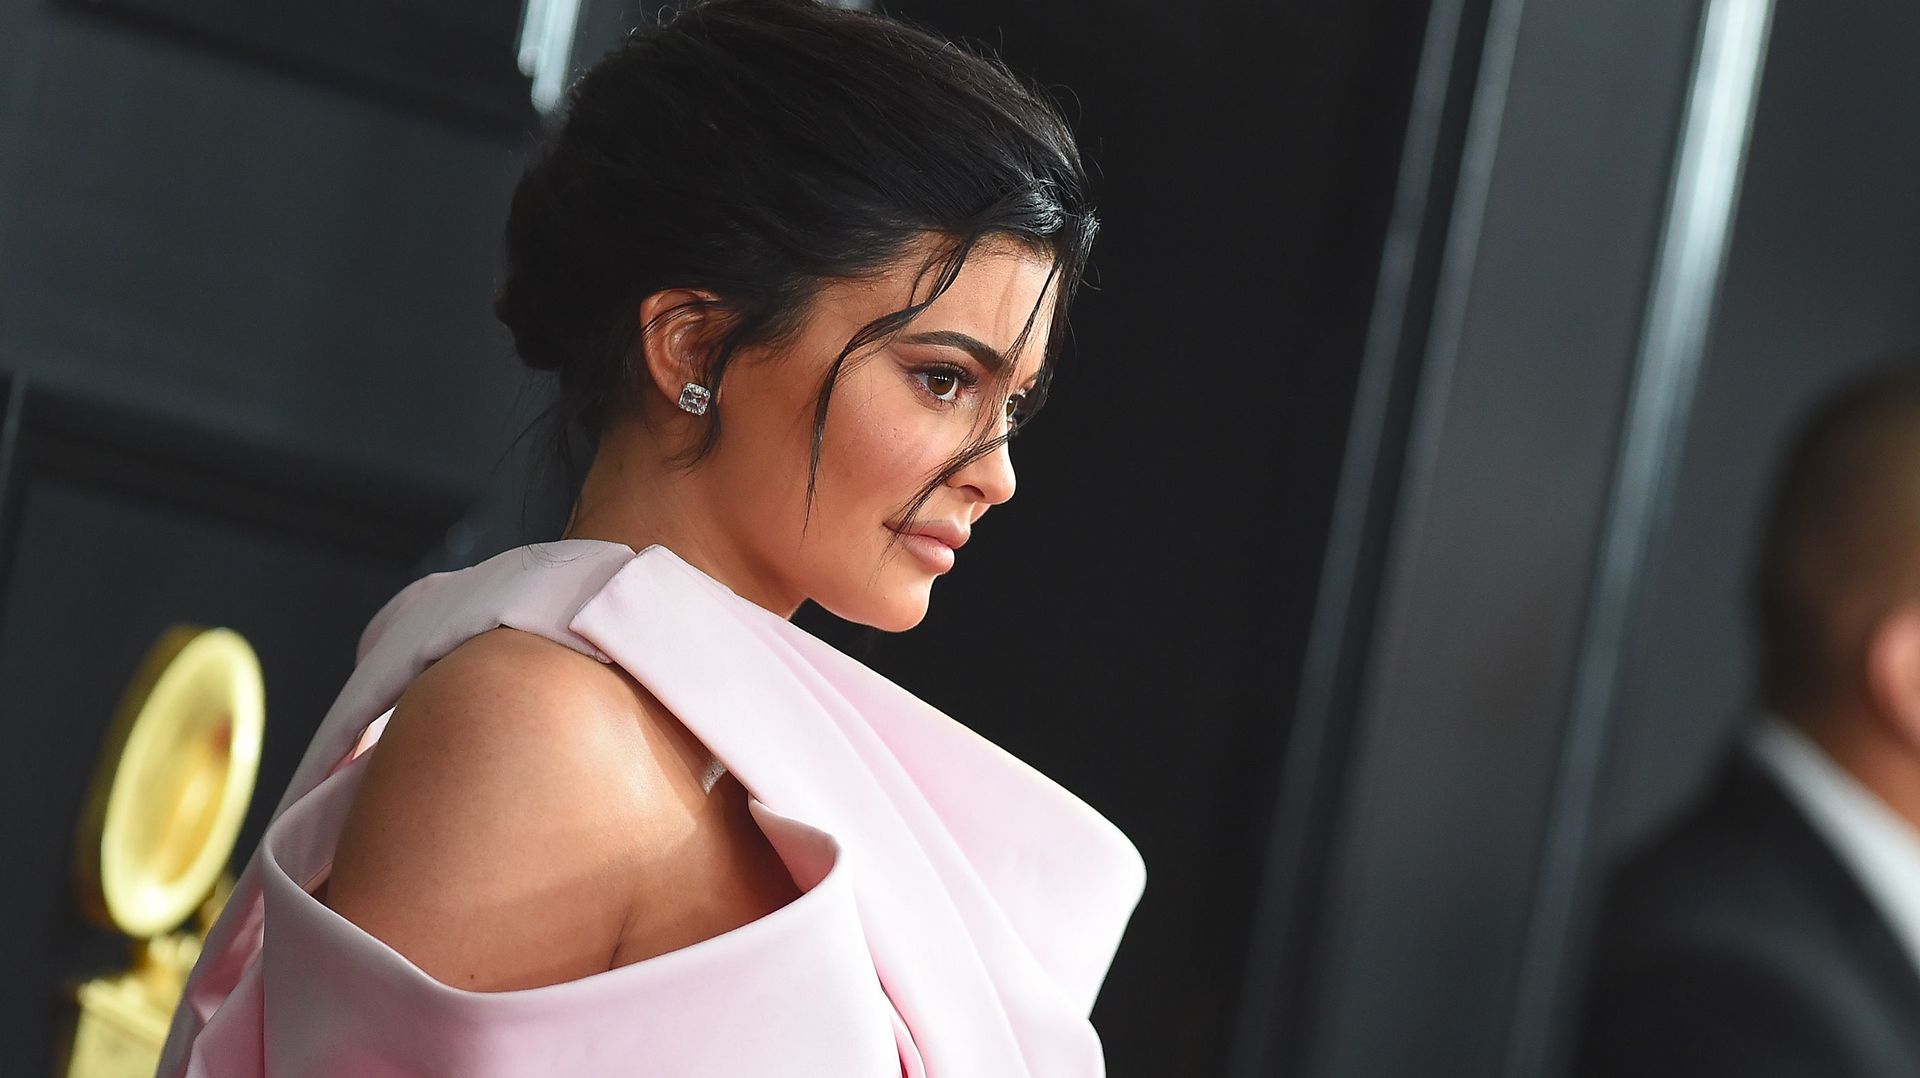 Le groupe américain de cosmétiques Coty a annoncé lundi qu'il allait prendre le contrôle de la marque de produits de beauté de la jeune milliardaire Kylie Jenner